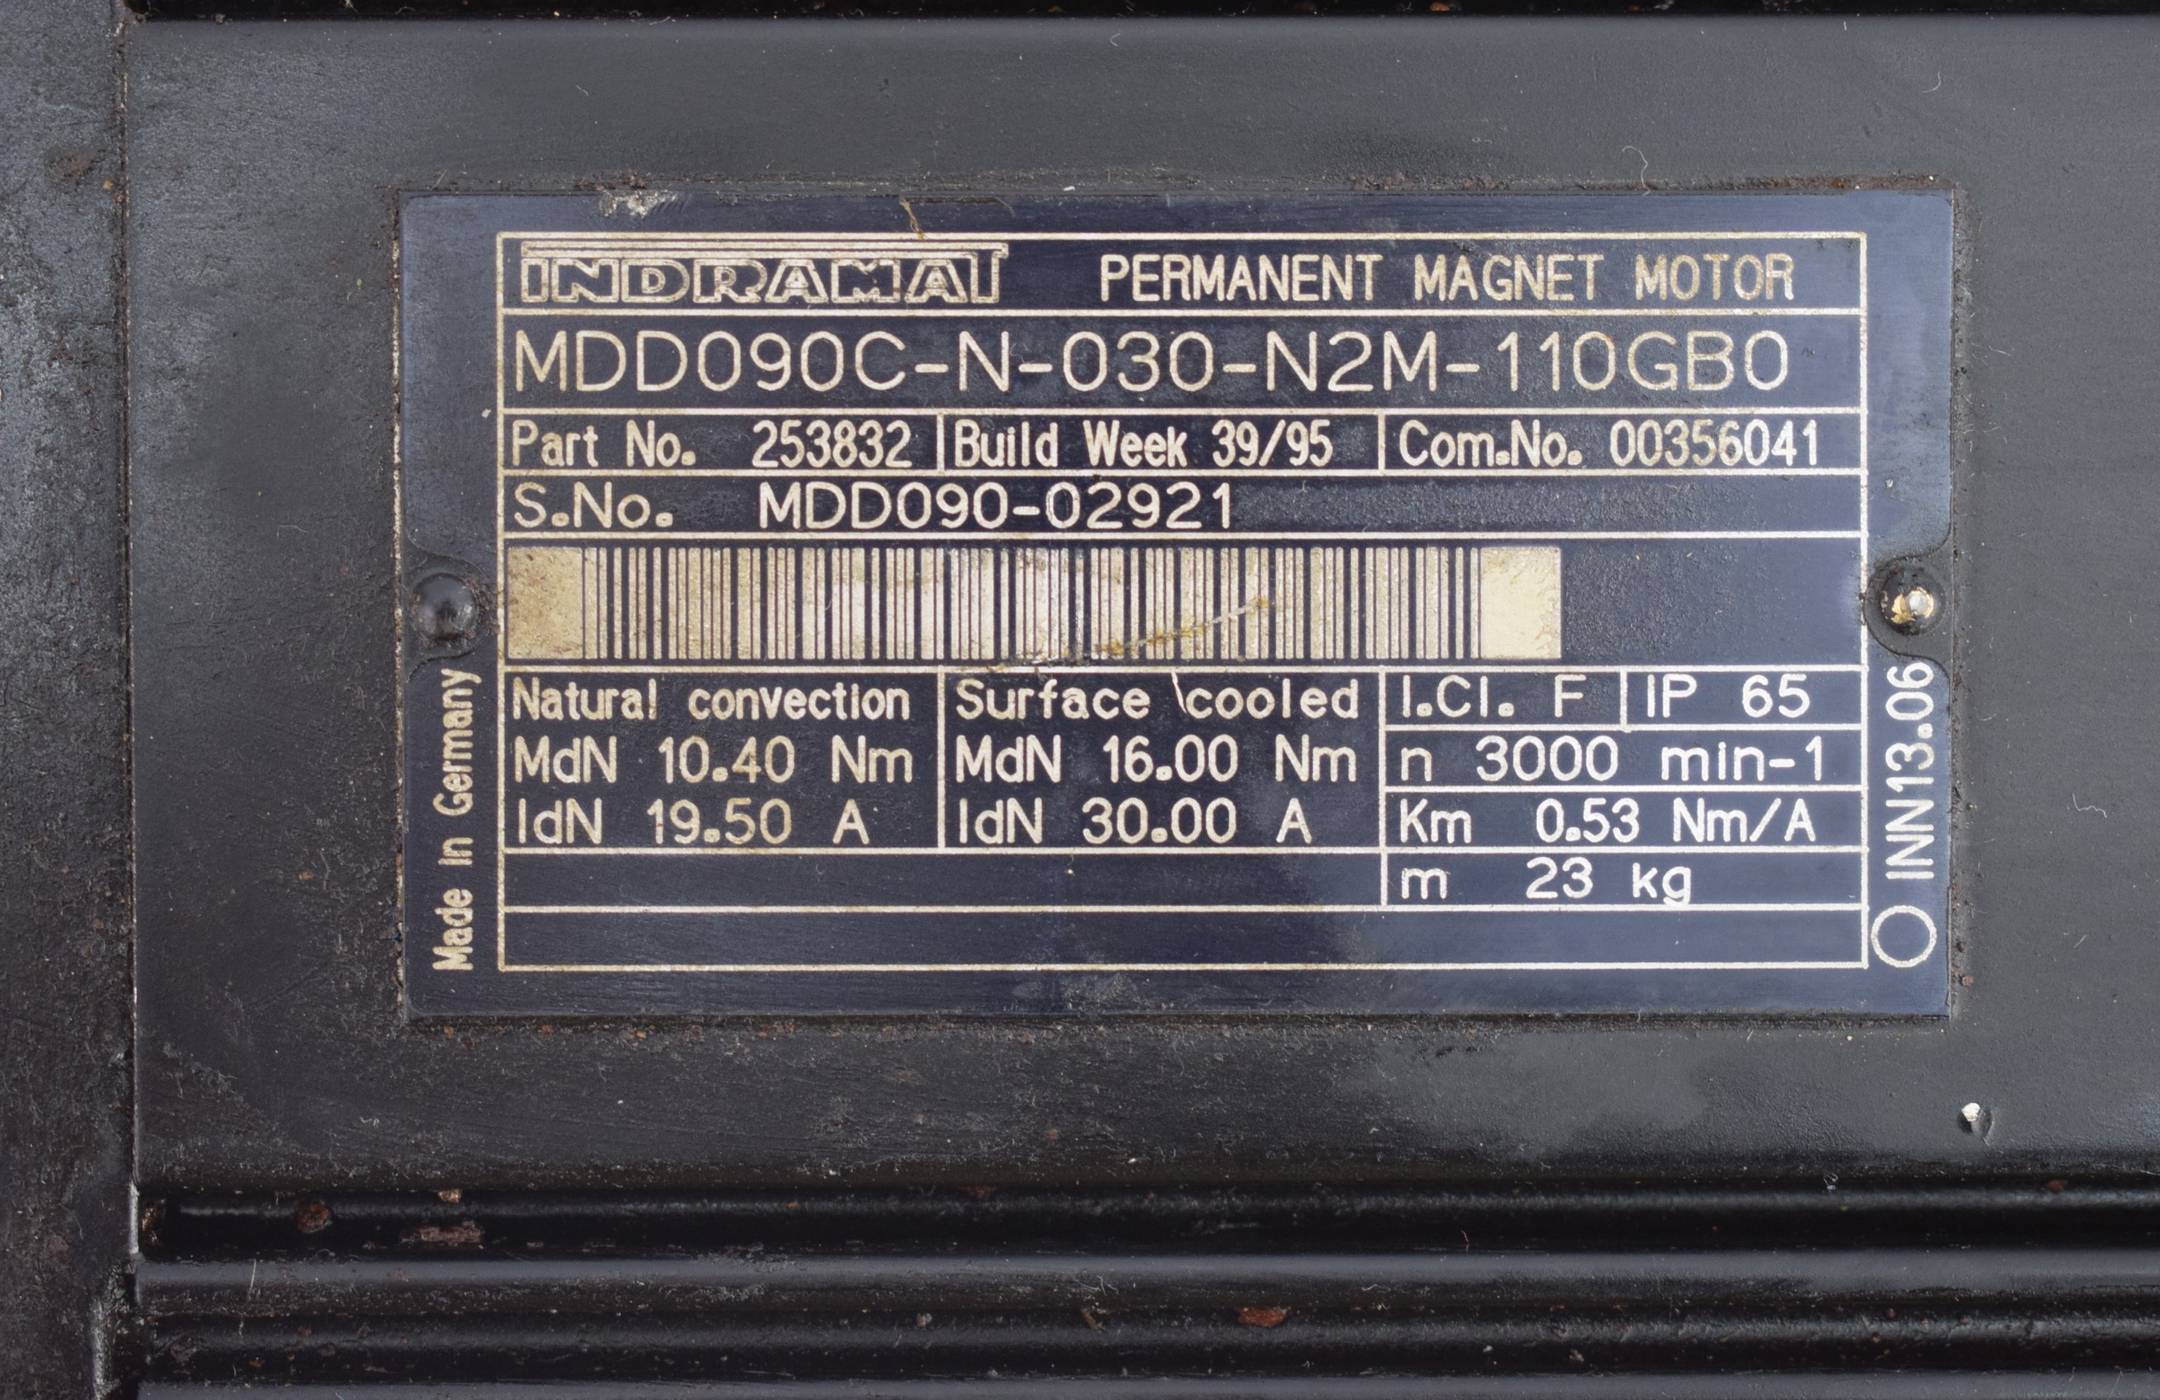 Indramat Permanent Magnet Motor MDD090C-N-030-N2M-110GB0 ( MDD090CN030N2M110GB0 )